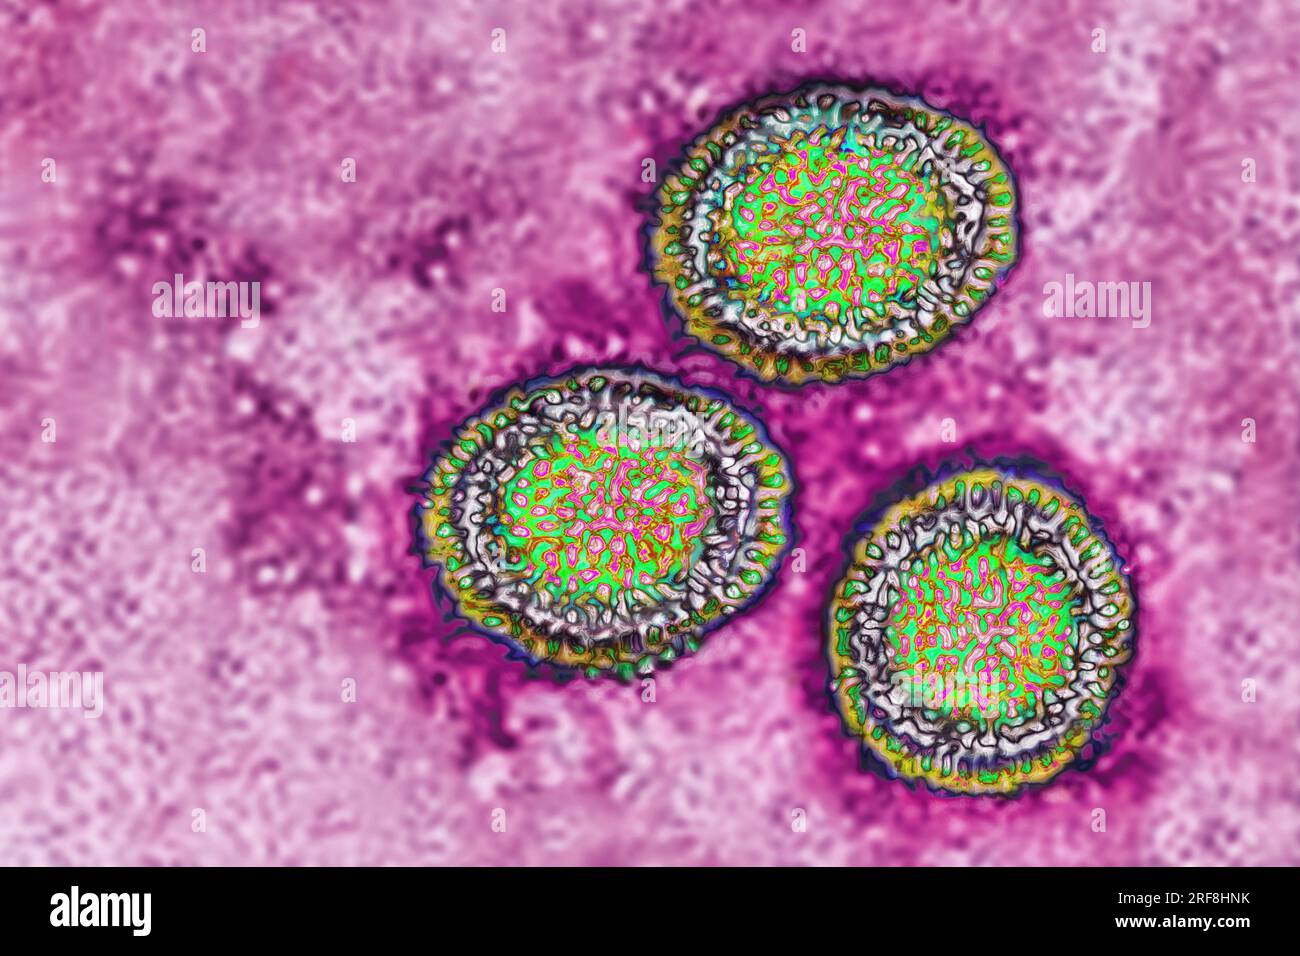 Influenzavirus der Familie der Orthomyxoviridae (respiratorische Virusinfektion). Transmissionselektronenmikroskopie, Virusdurchmesser 80 bis 120 Nanometer. Stockfoto